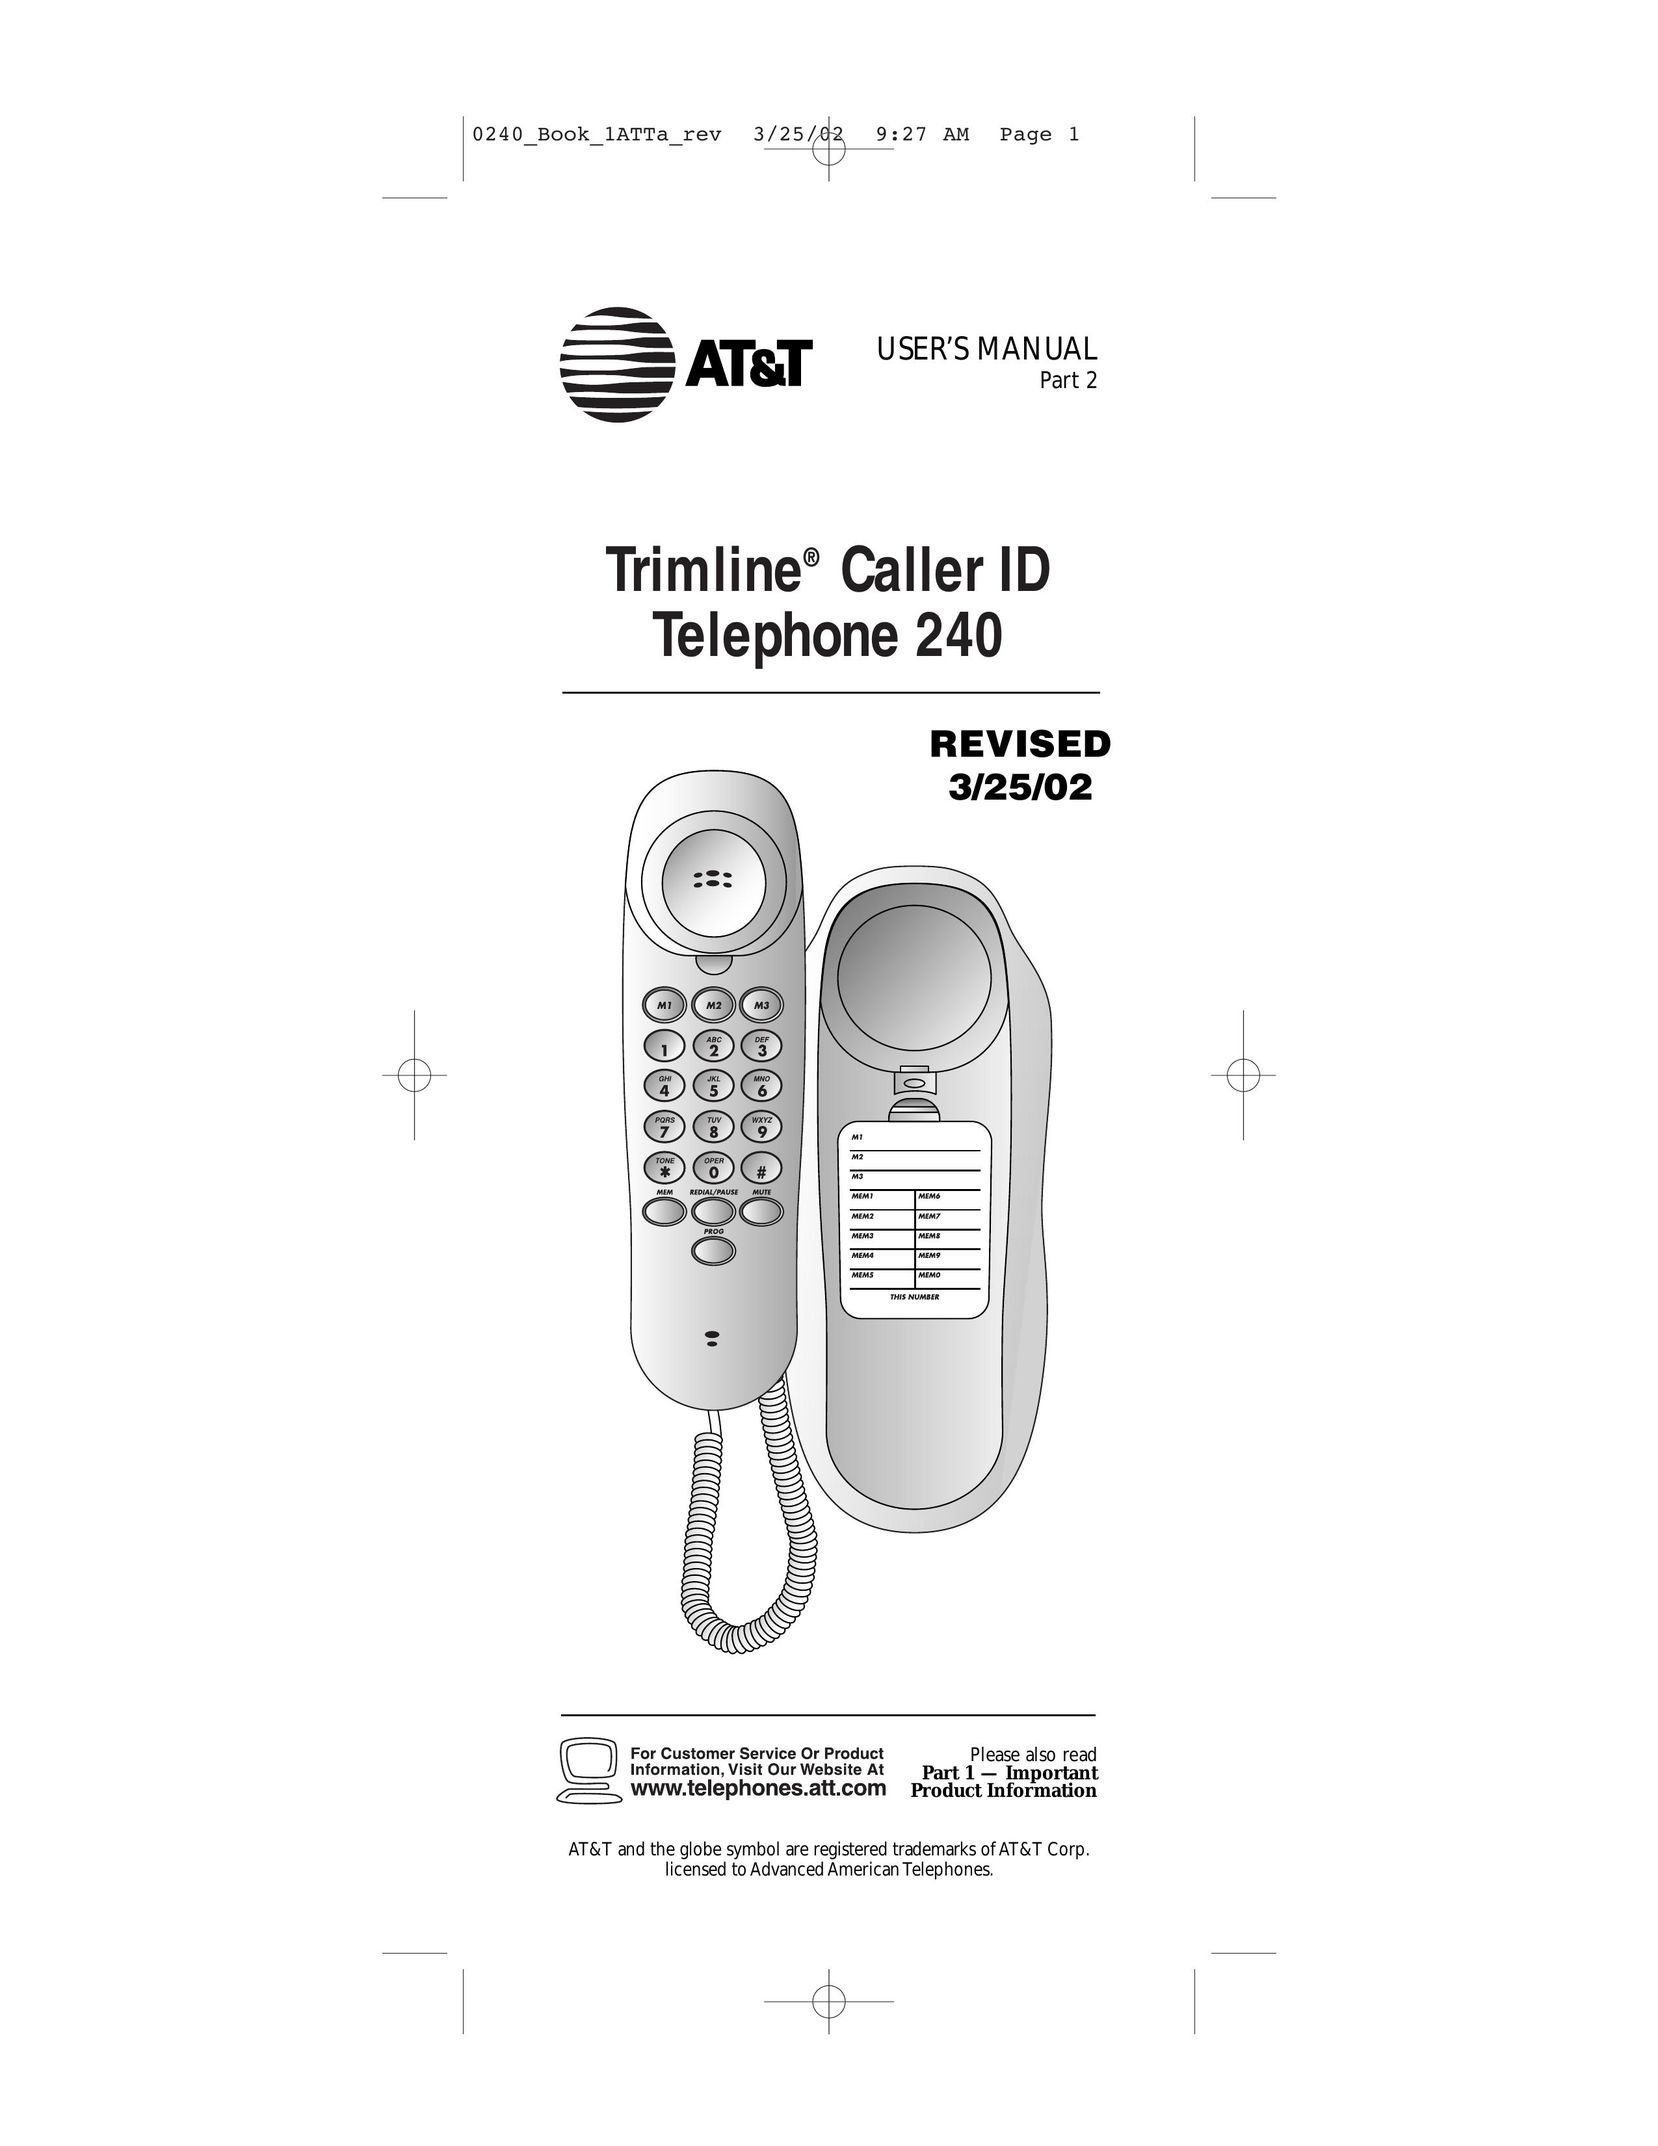 AT&T 240 Telephone User Manual